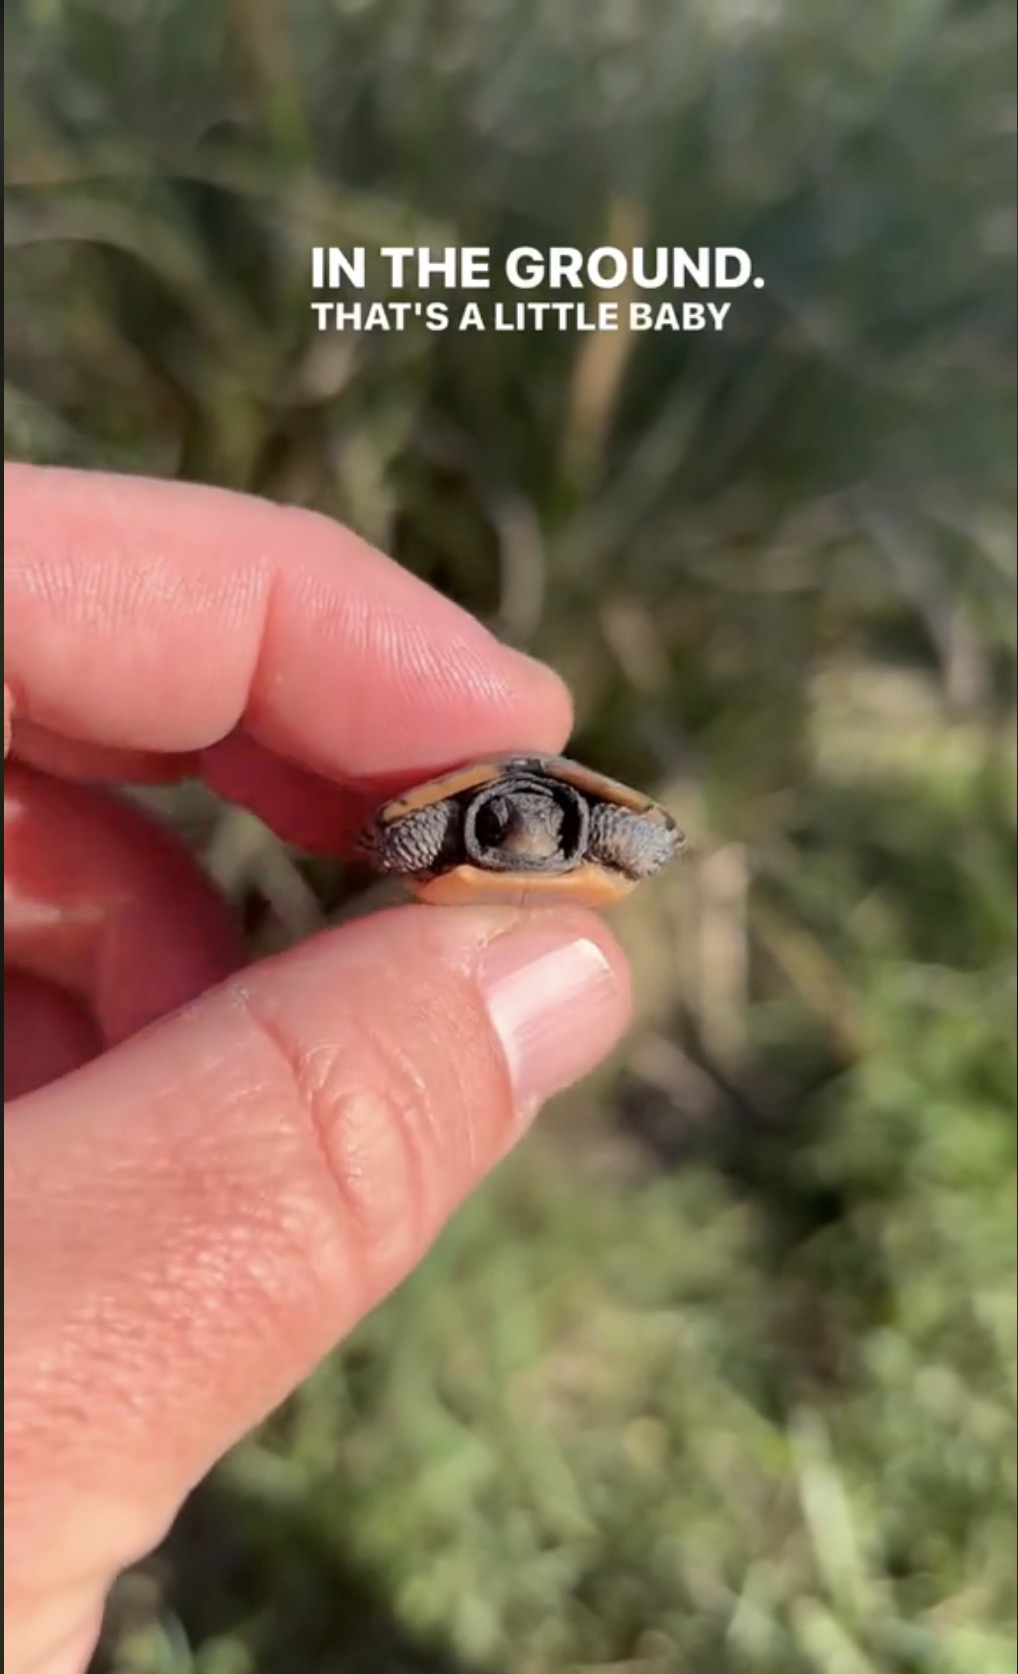 Diese winzige Schildkröte ist selbst für den aufmerksamsten Betrachter schwer zu erkennen